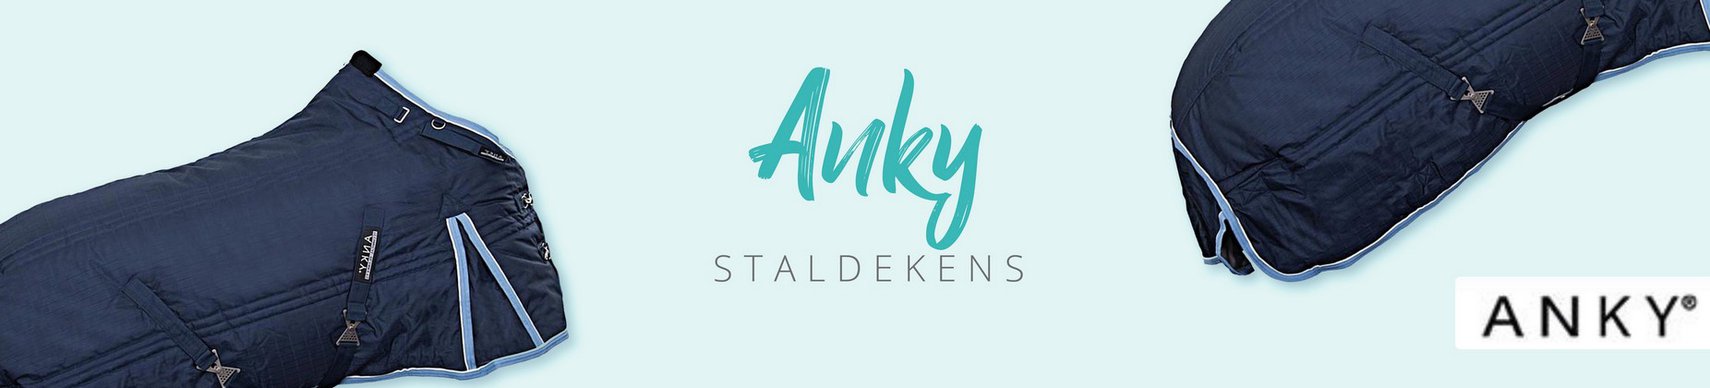 Merk_Anky_Staldekens.jpg